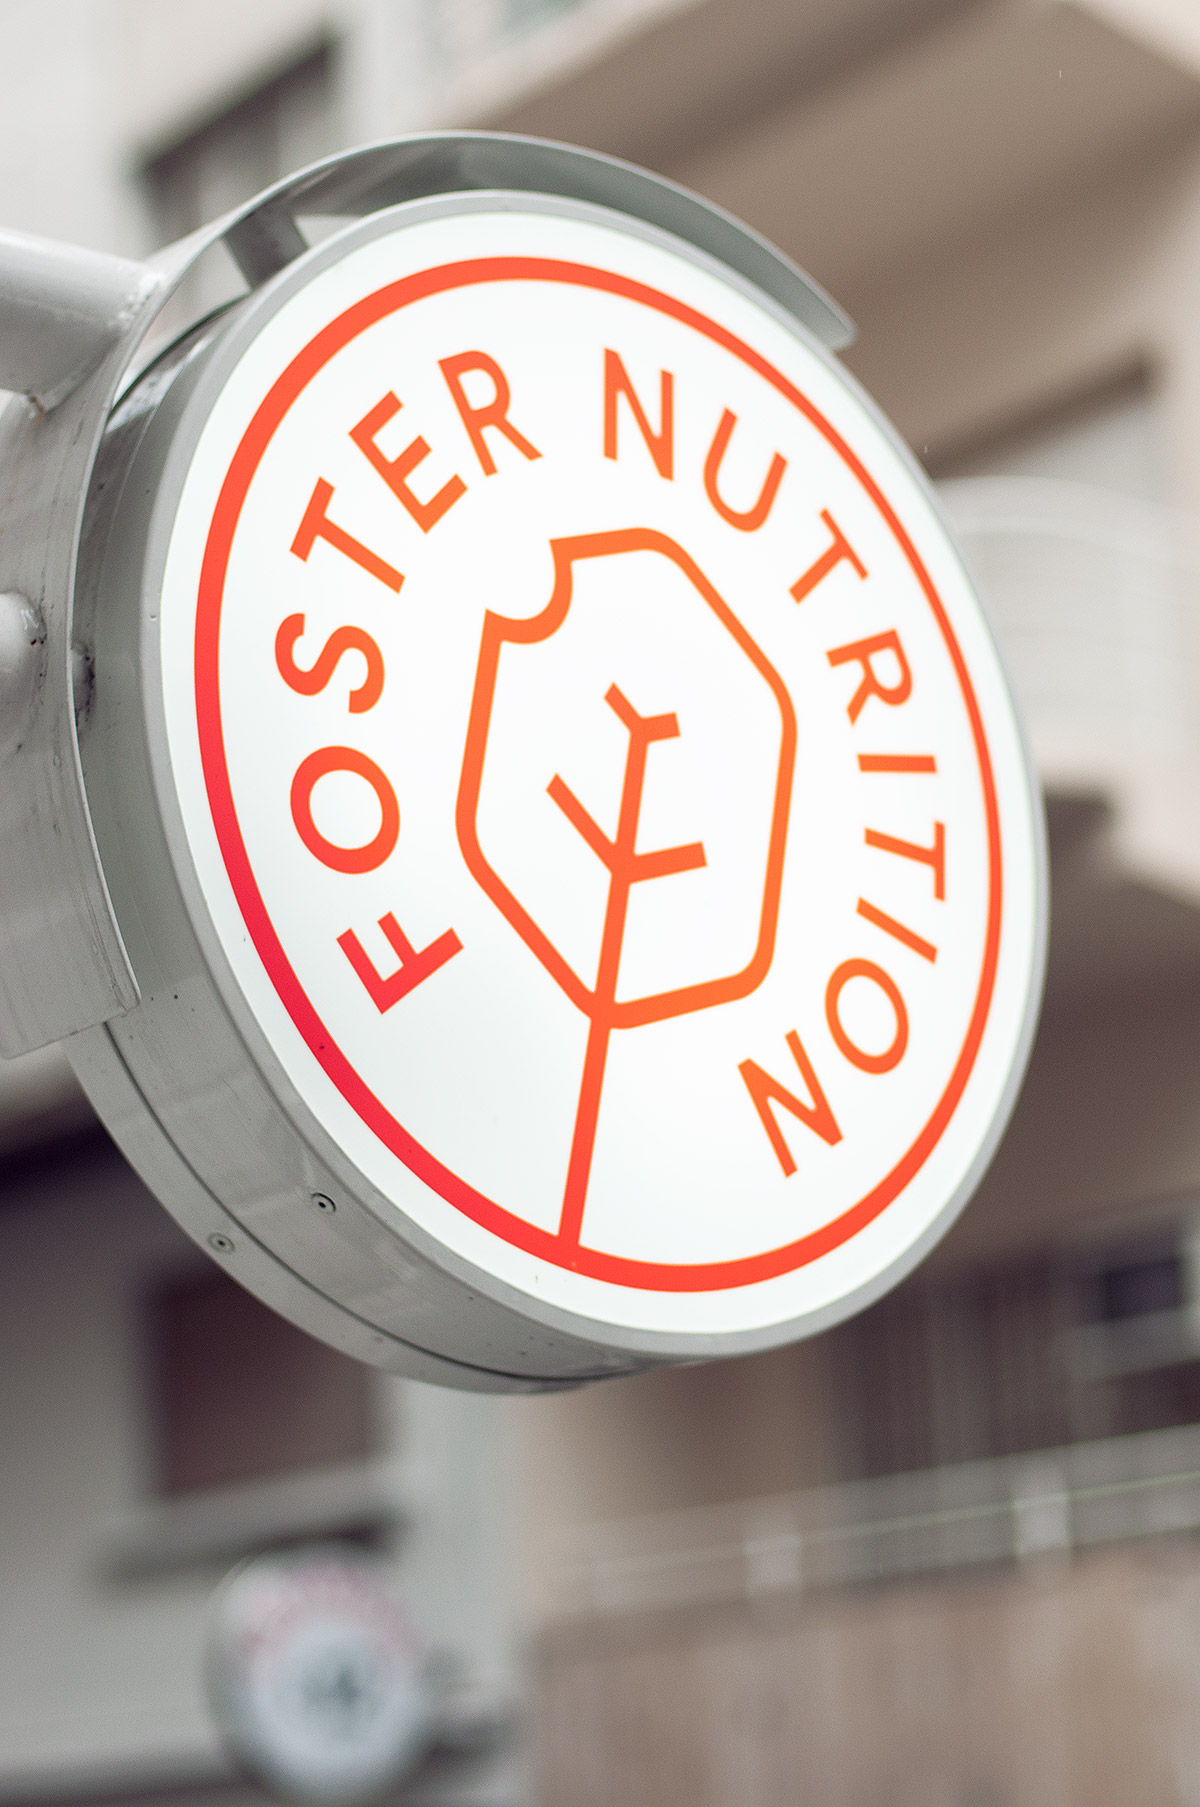 Foster Nutrition - El primer restaurante inteligente de Latinoamérica